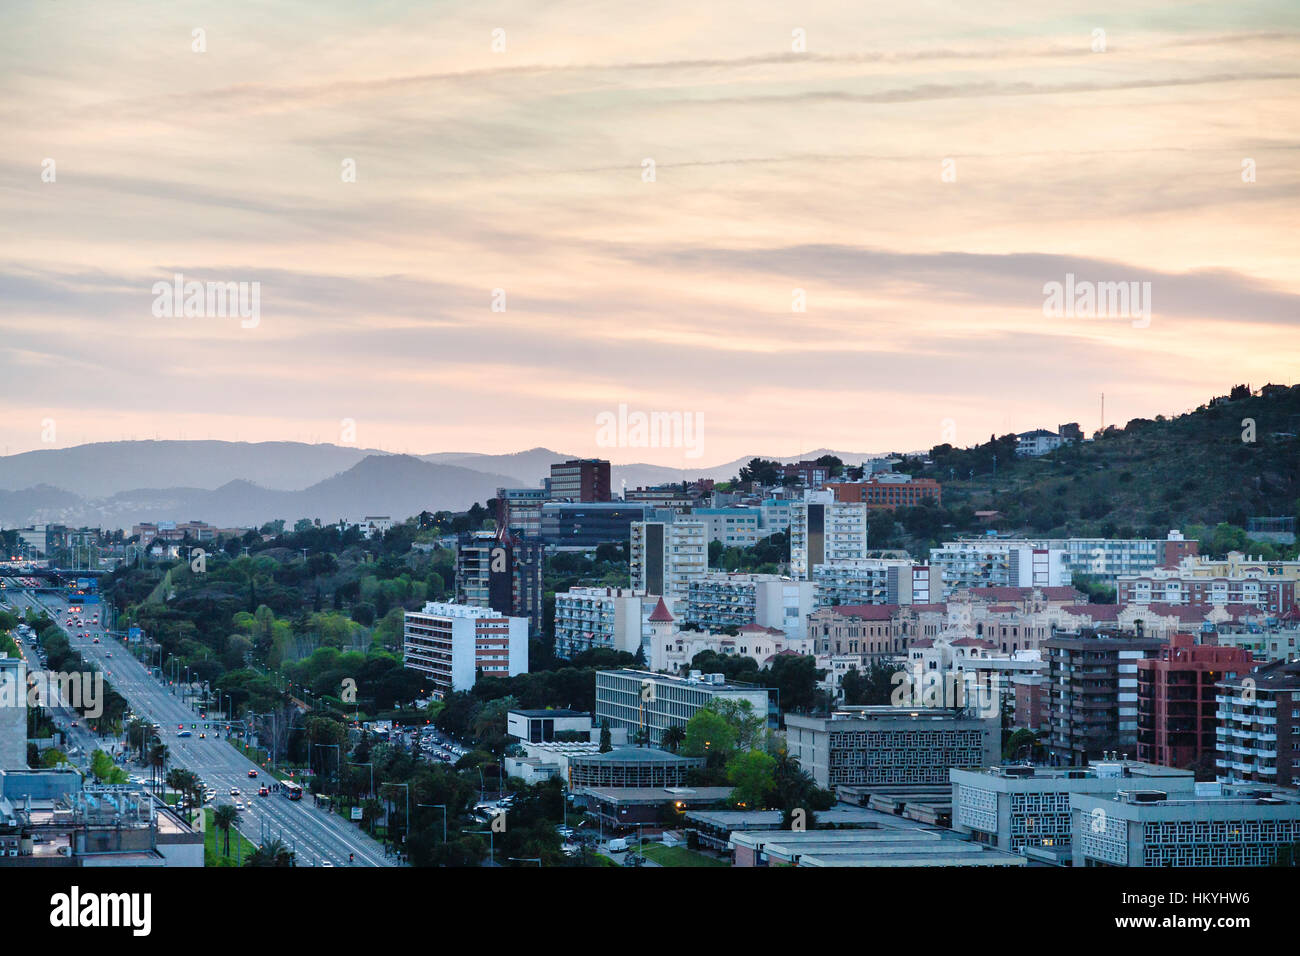 Sunset sky over of avenue Avinguda Diagonal in Barcelona city Stock Photo